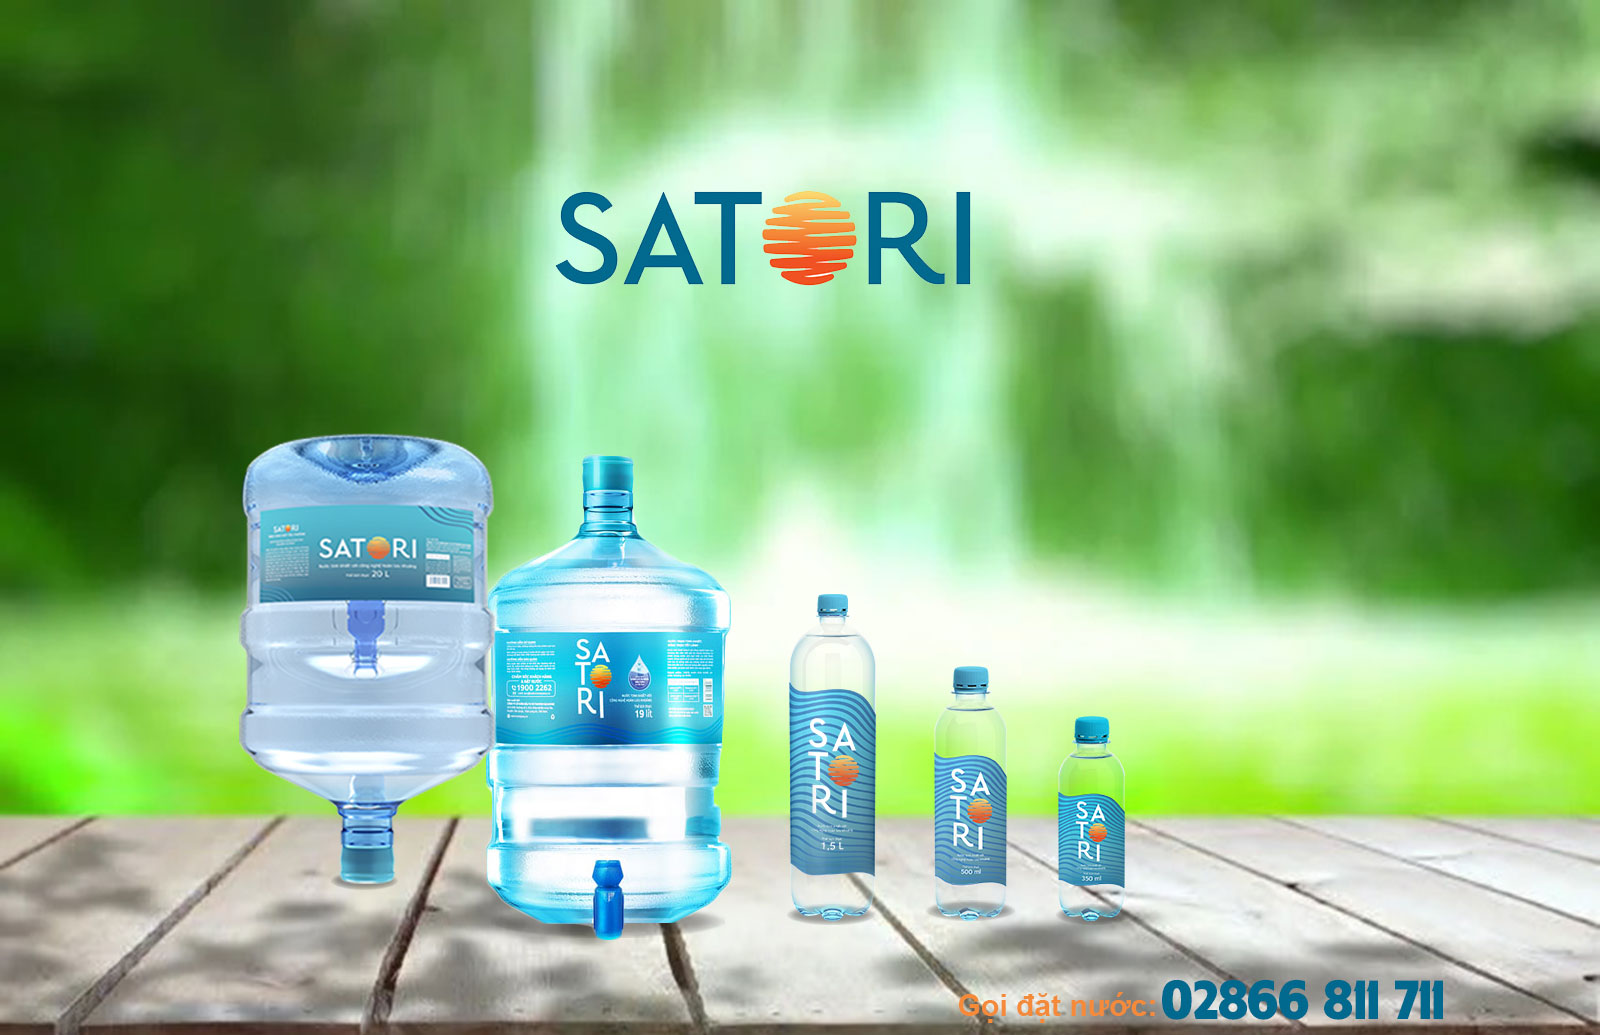 Nước lọc Satori - Tinh khiết hoàn lưu khoáng, đặt hàng giao nhanh